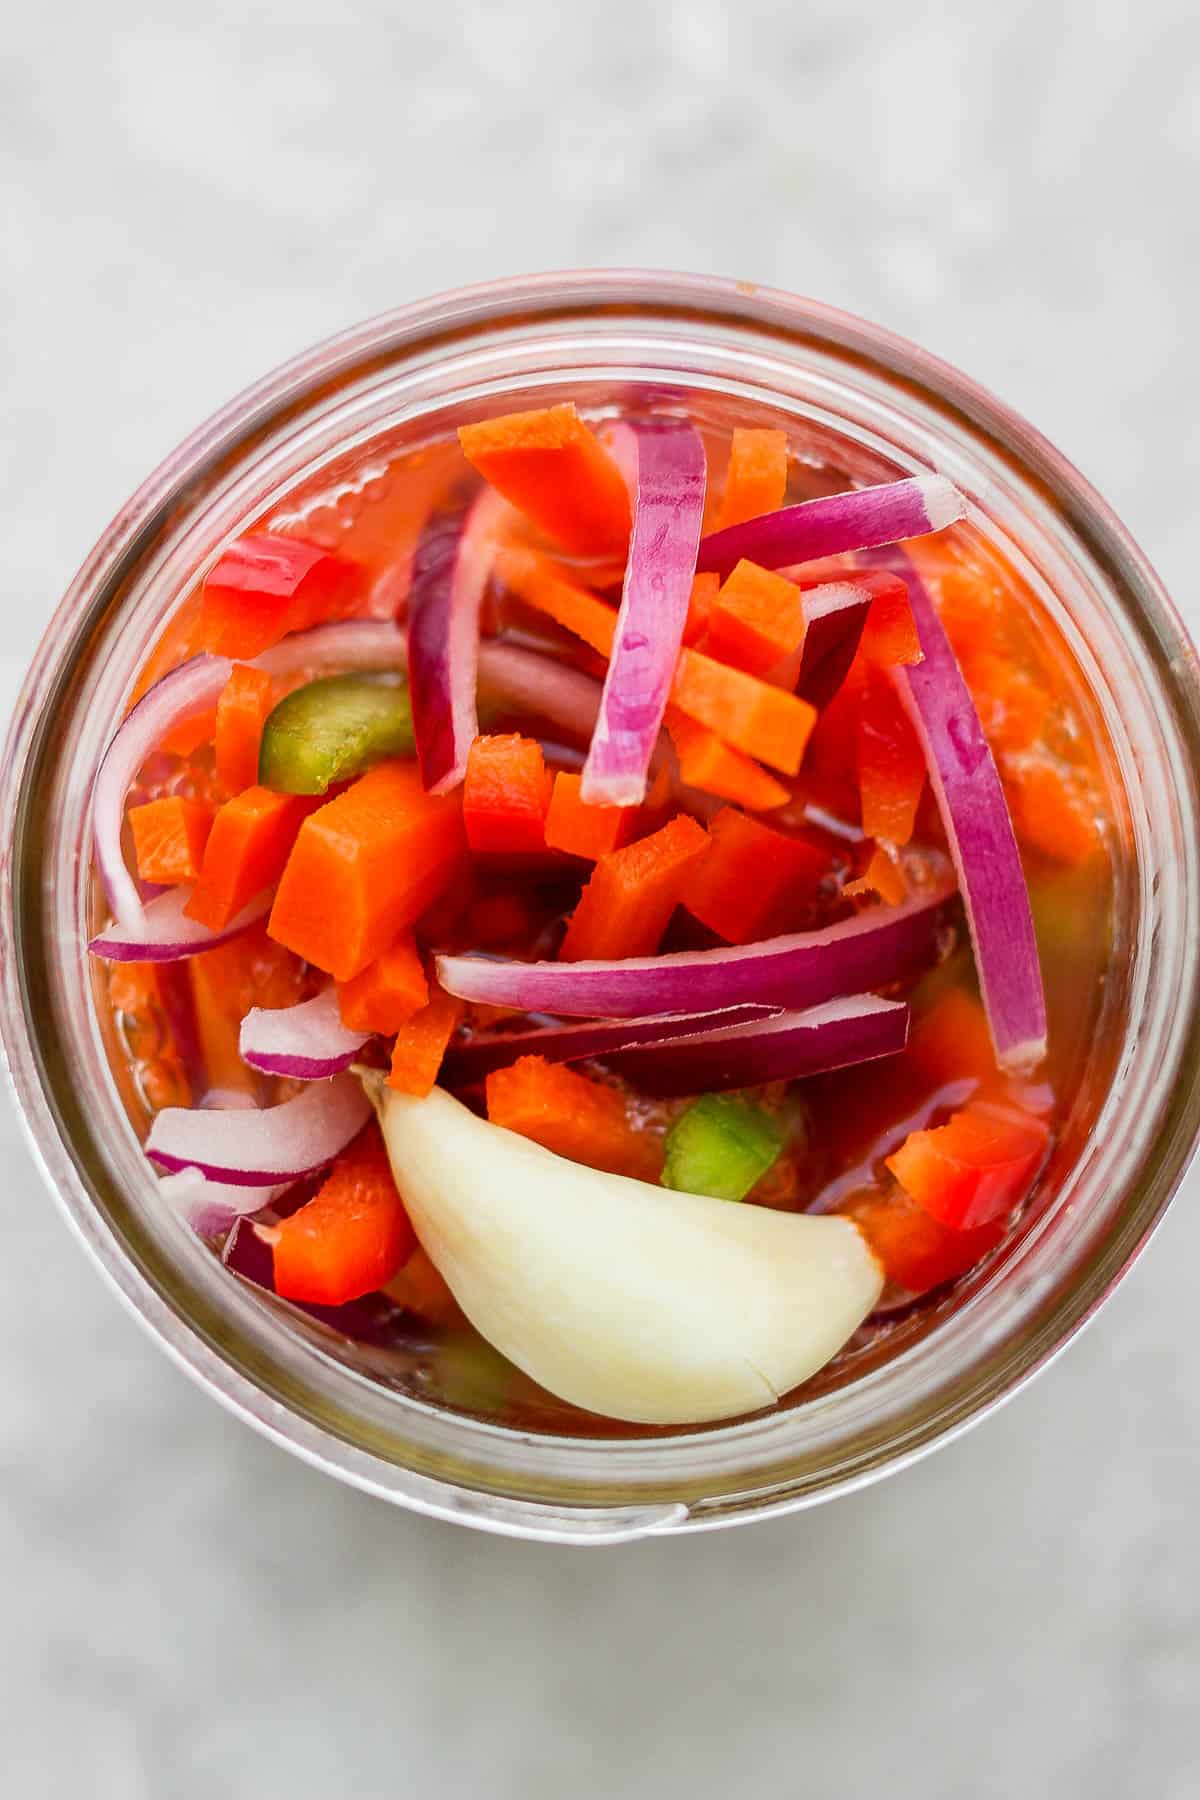 A jar of quick pickled vegetables.